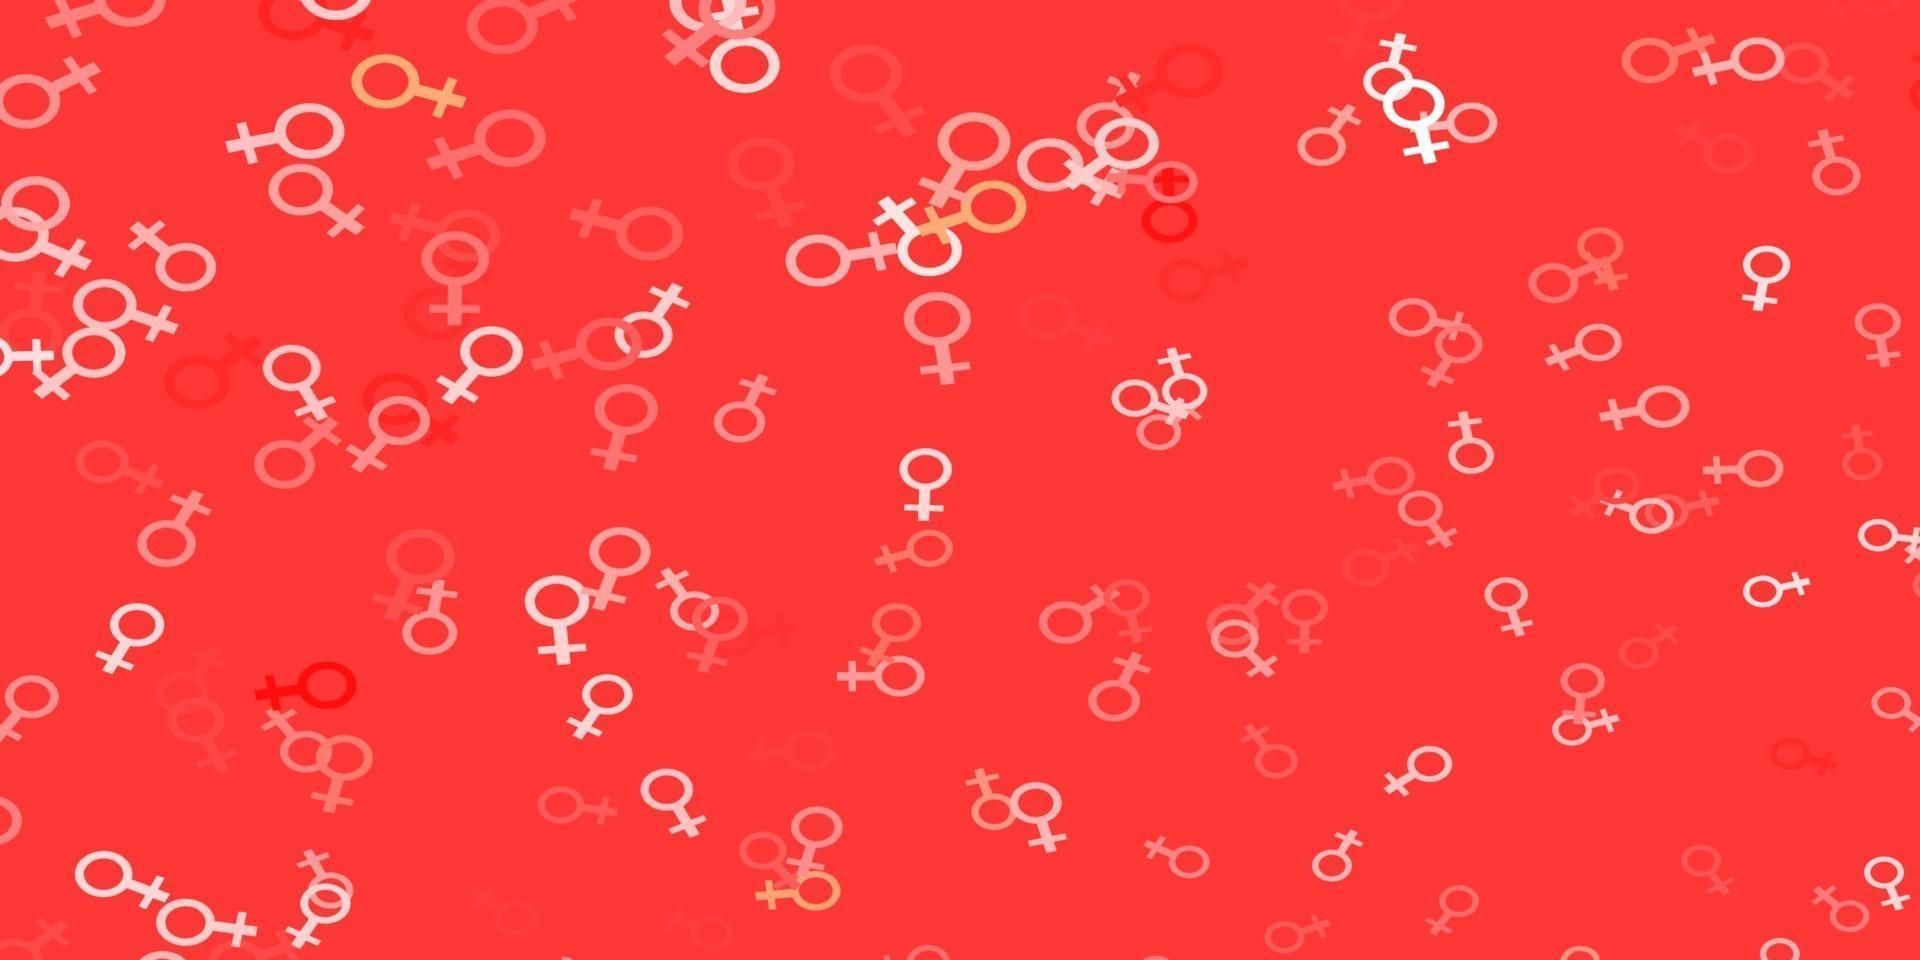 modello vettoriale rosso chiaro con elementi di femminismo.